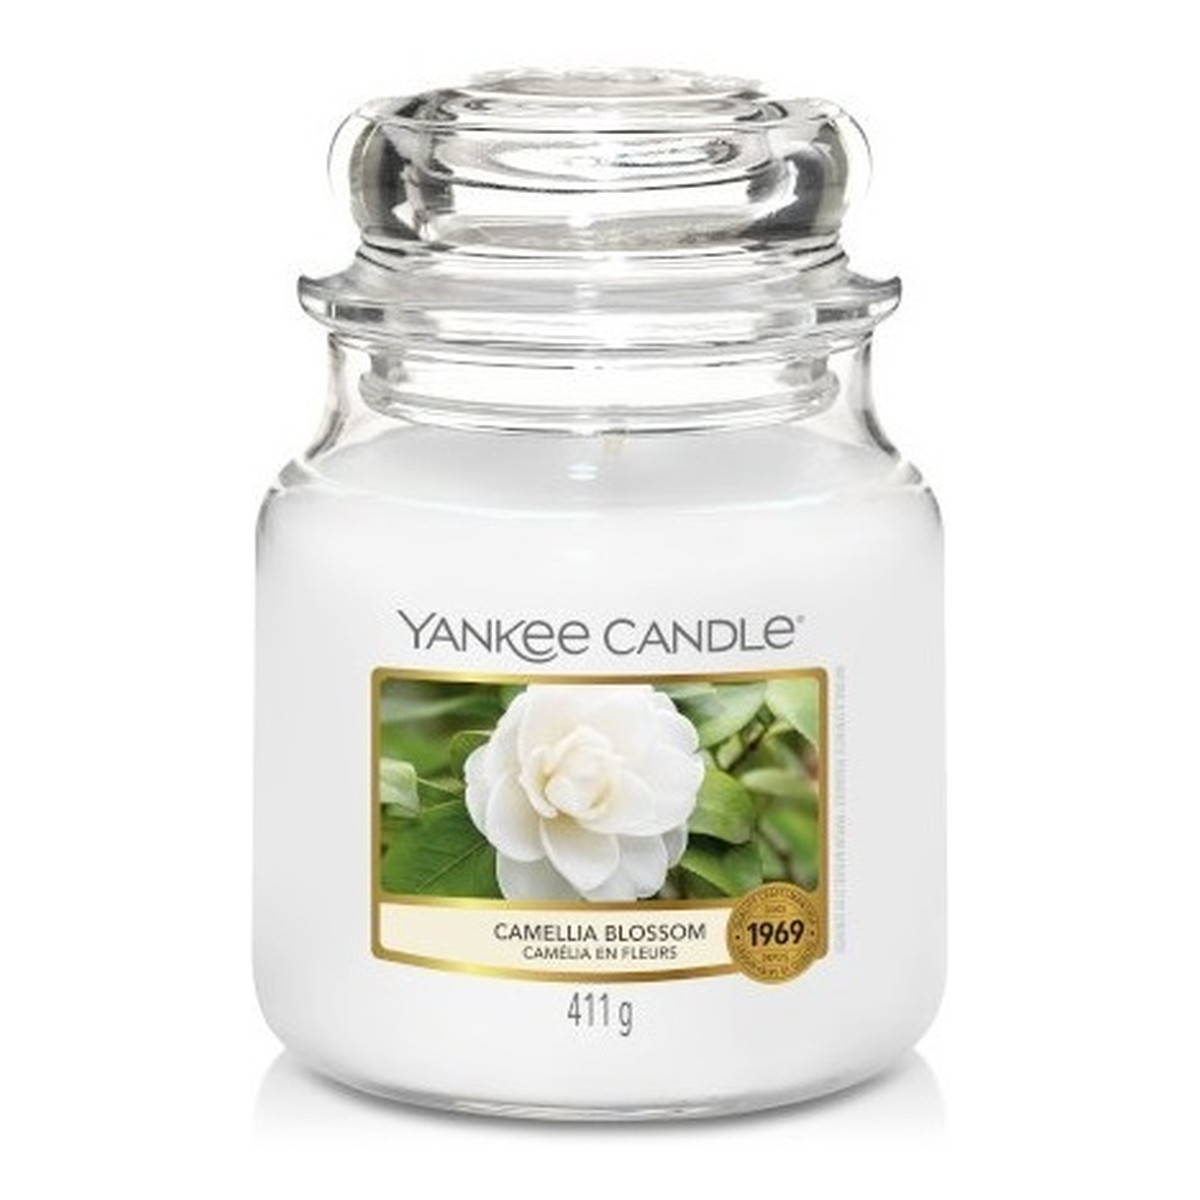 Yankee Candle Świeca zapachowa średni słój camellia blossom 411g